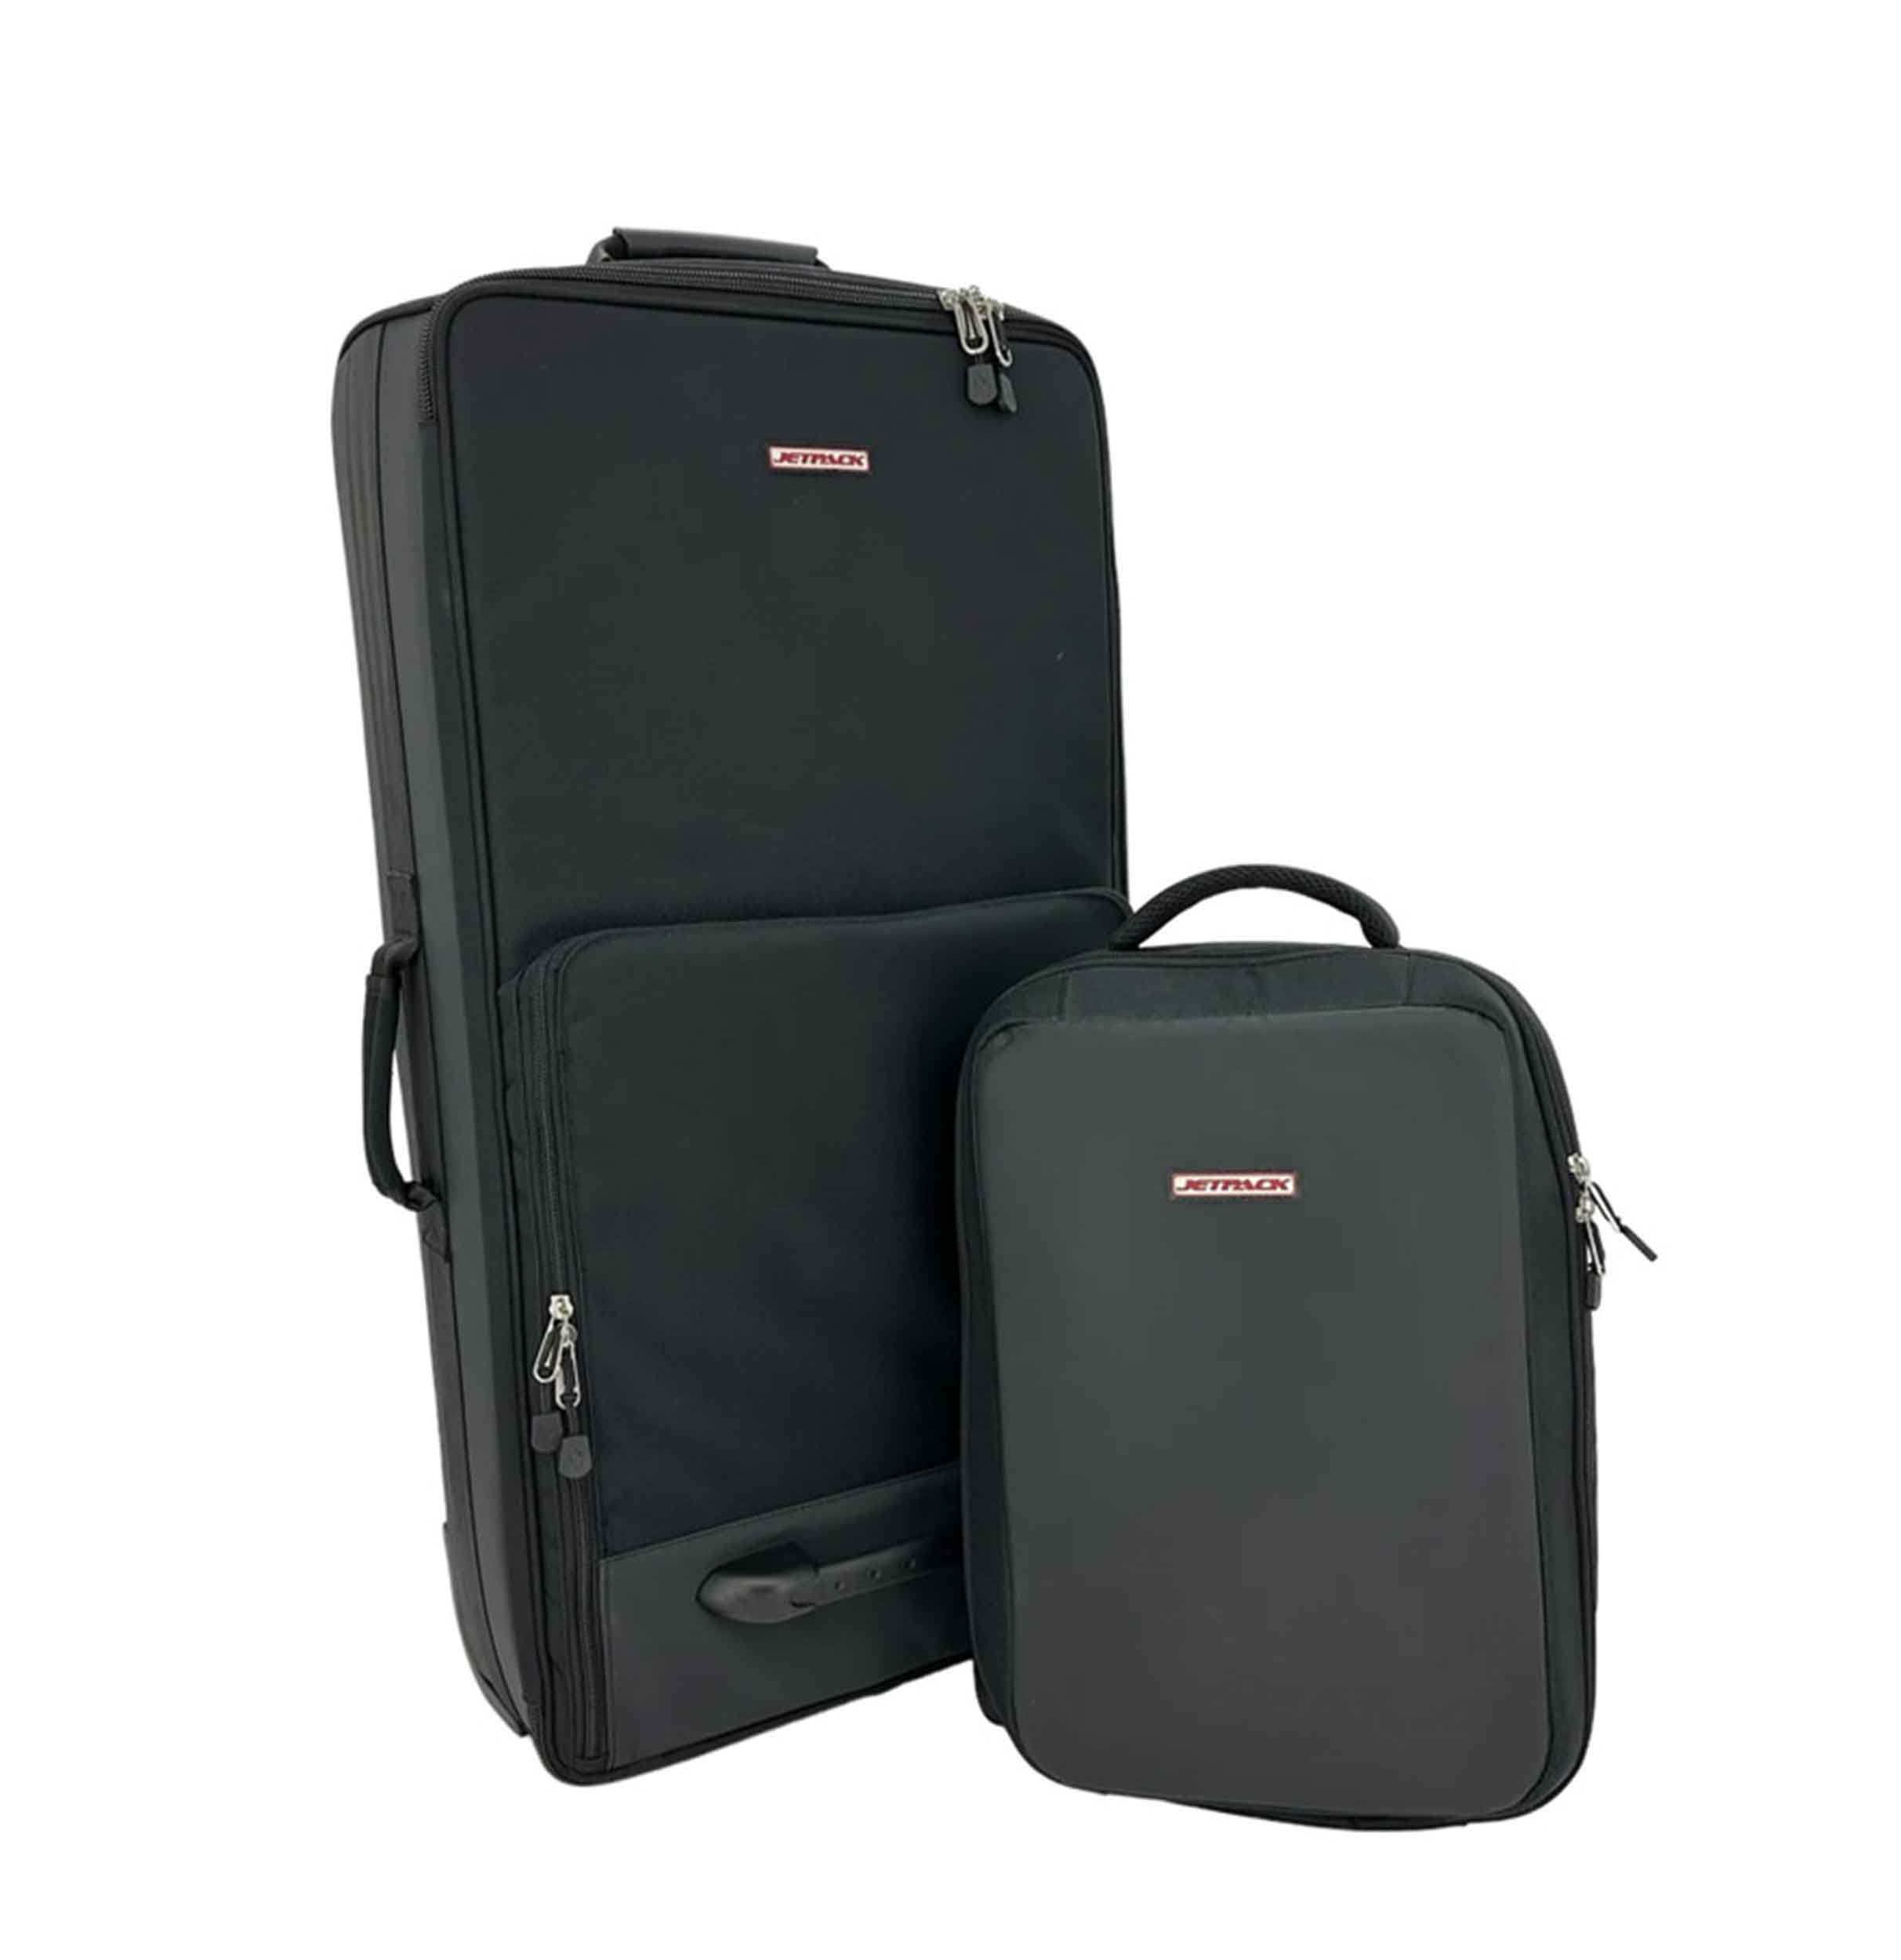 Jetpack Glide System Includes Glide Roller Bag and Snap Backpack - Hollywood DJ